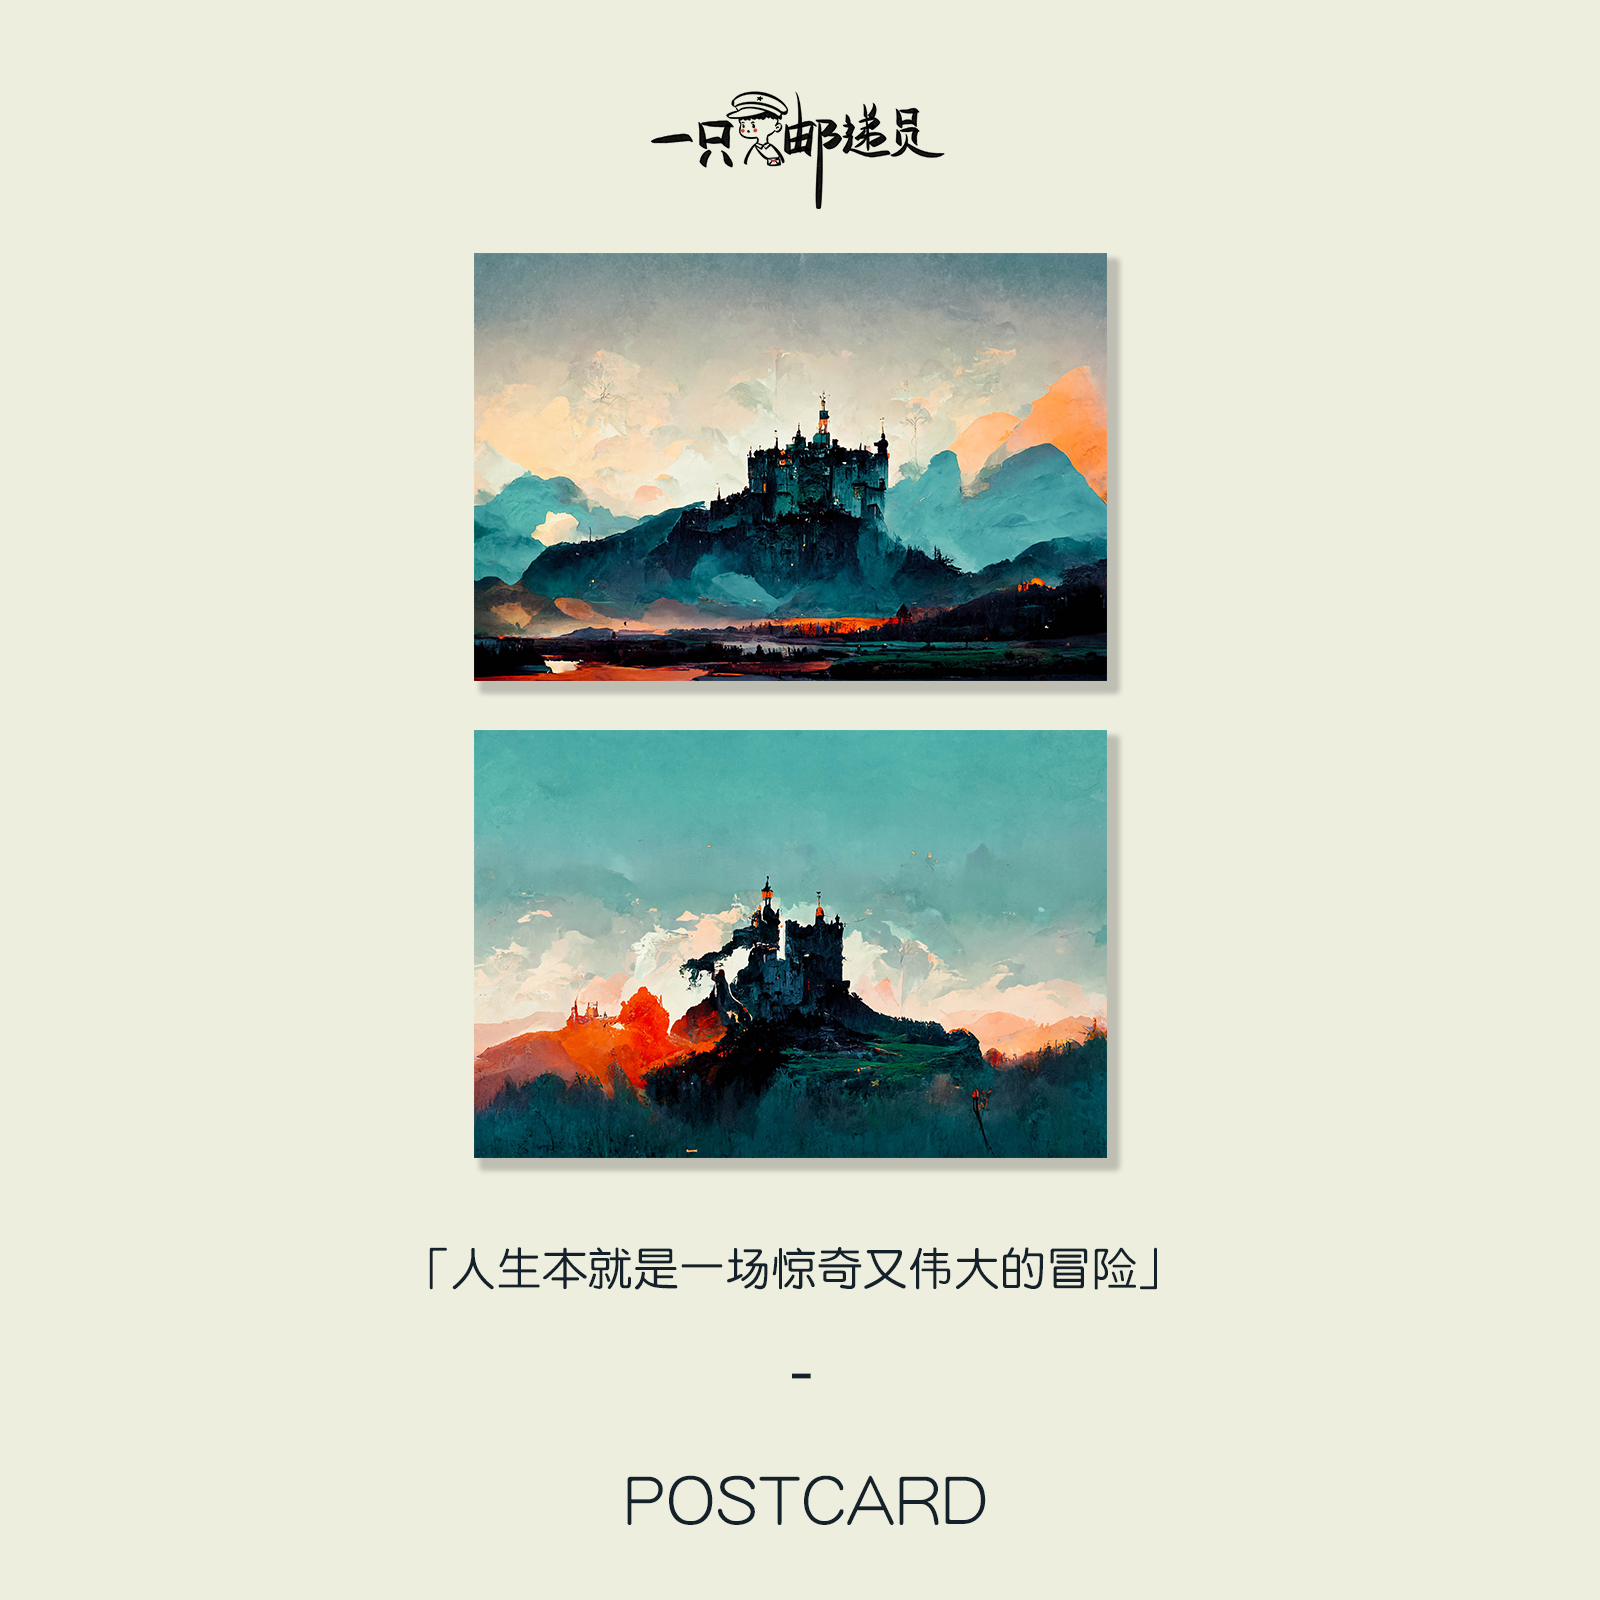 「冒险岛」最终愿你有灿烂的未来  原创手绘明信片贺卡留言纸礼物